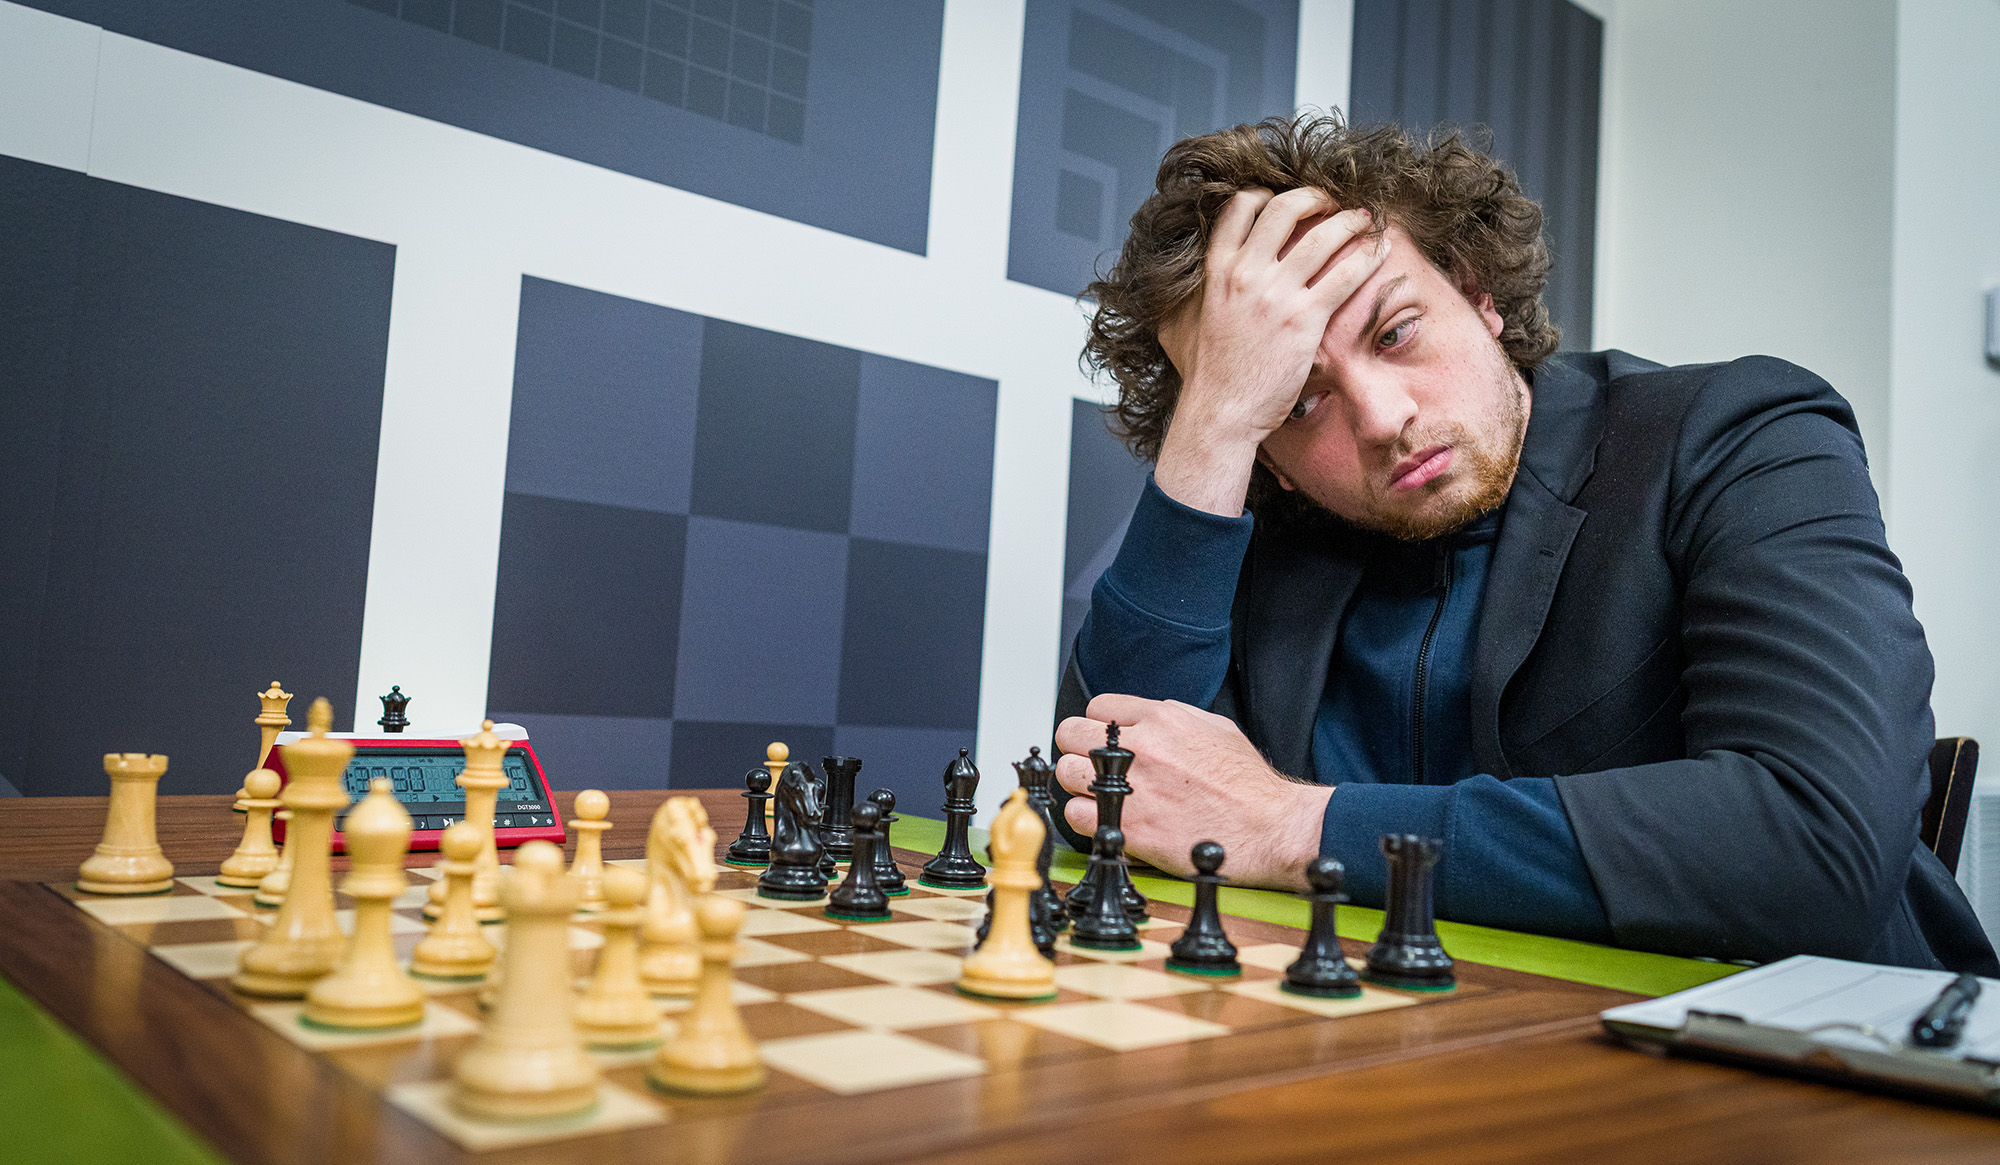 Hans Niemann, fotografiado jugando al ajedrez en St. Louis el 11 de septiembre, ha sido acusado de hacer trampa por el cinco veces campeón mundial Magnus Carlsen.  Niemann niega la acusación.